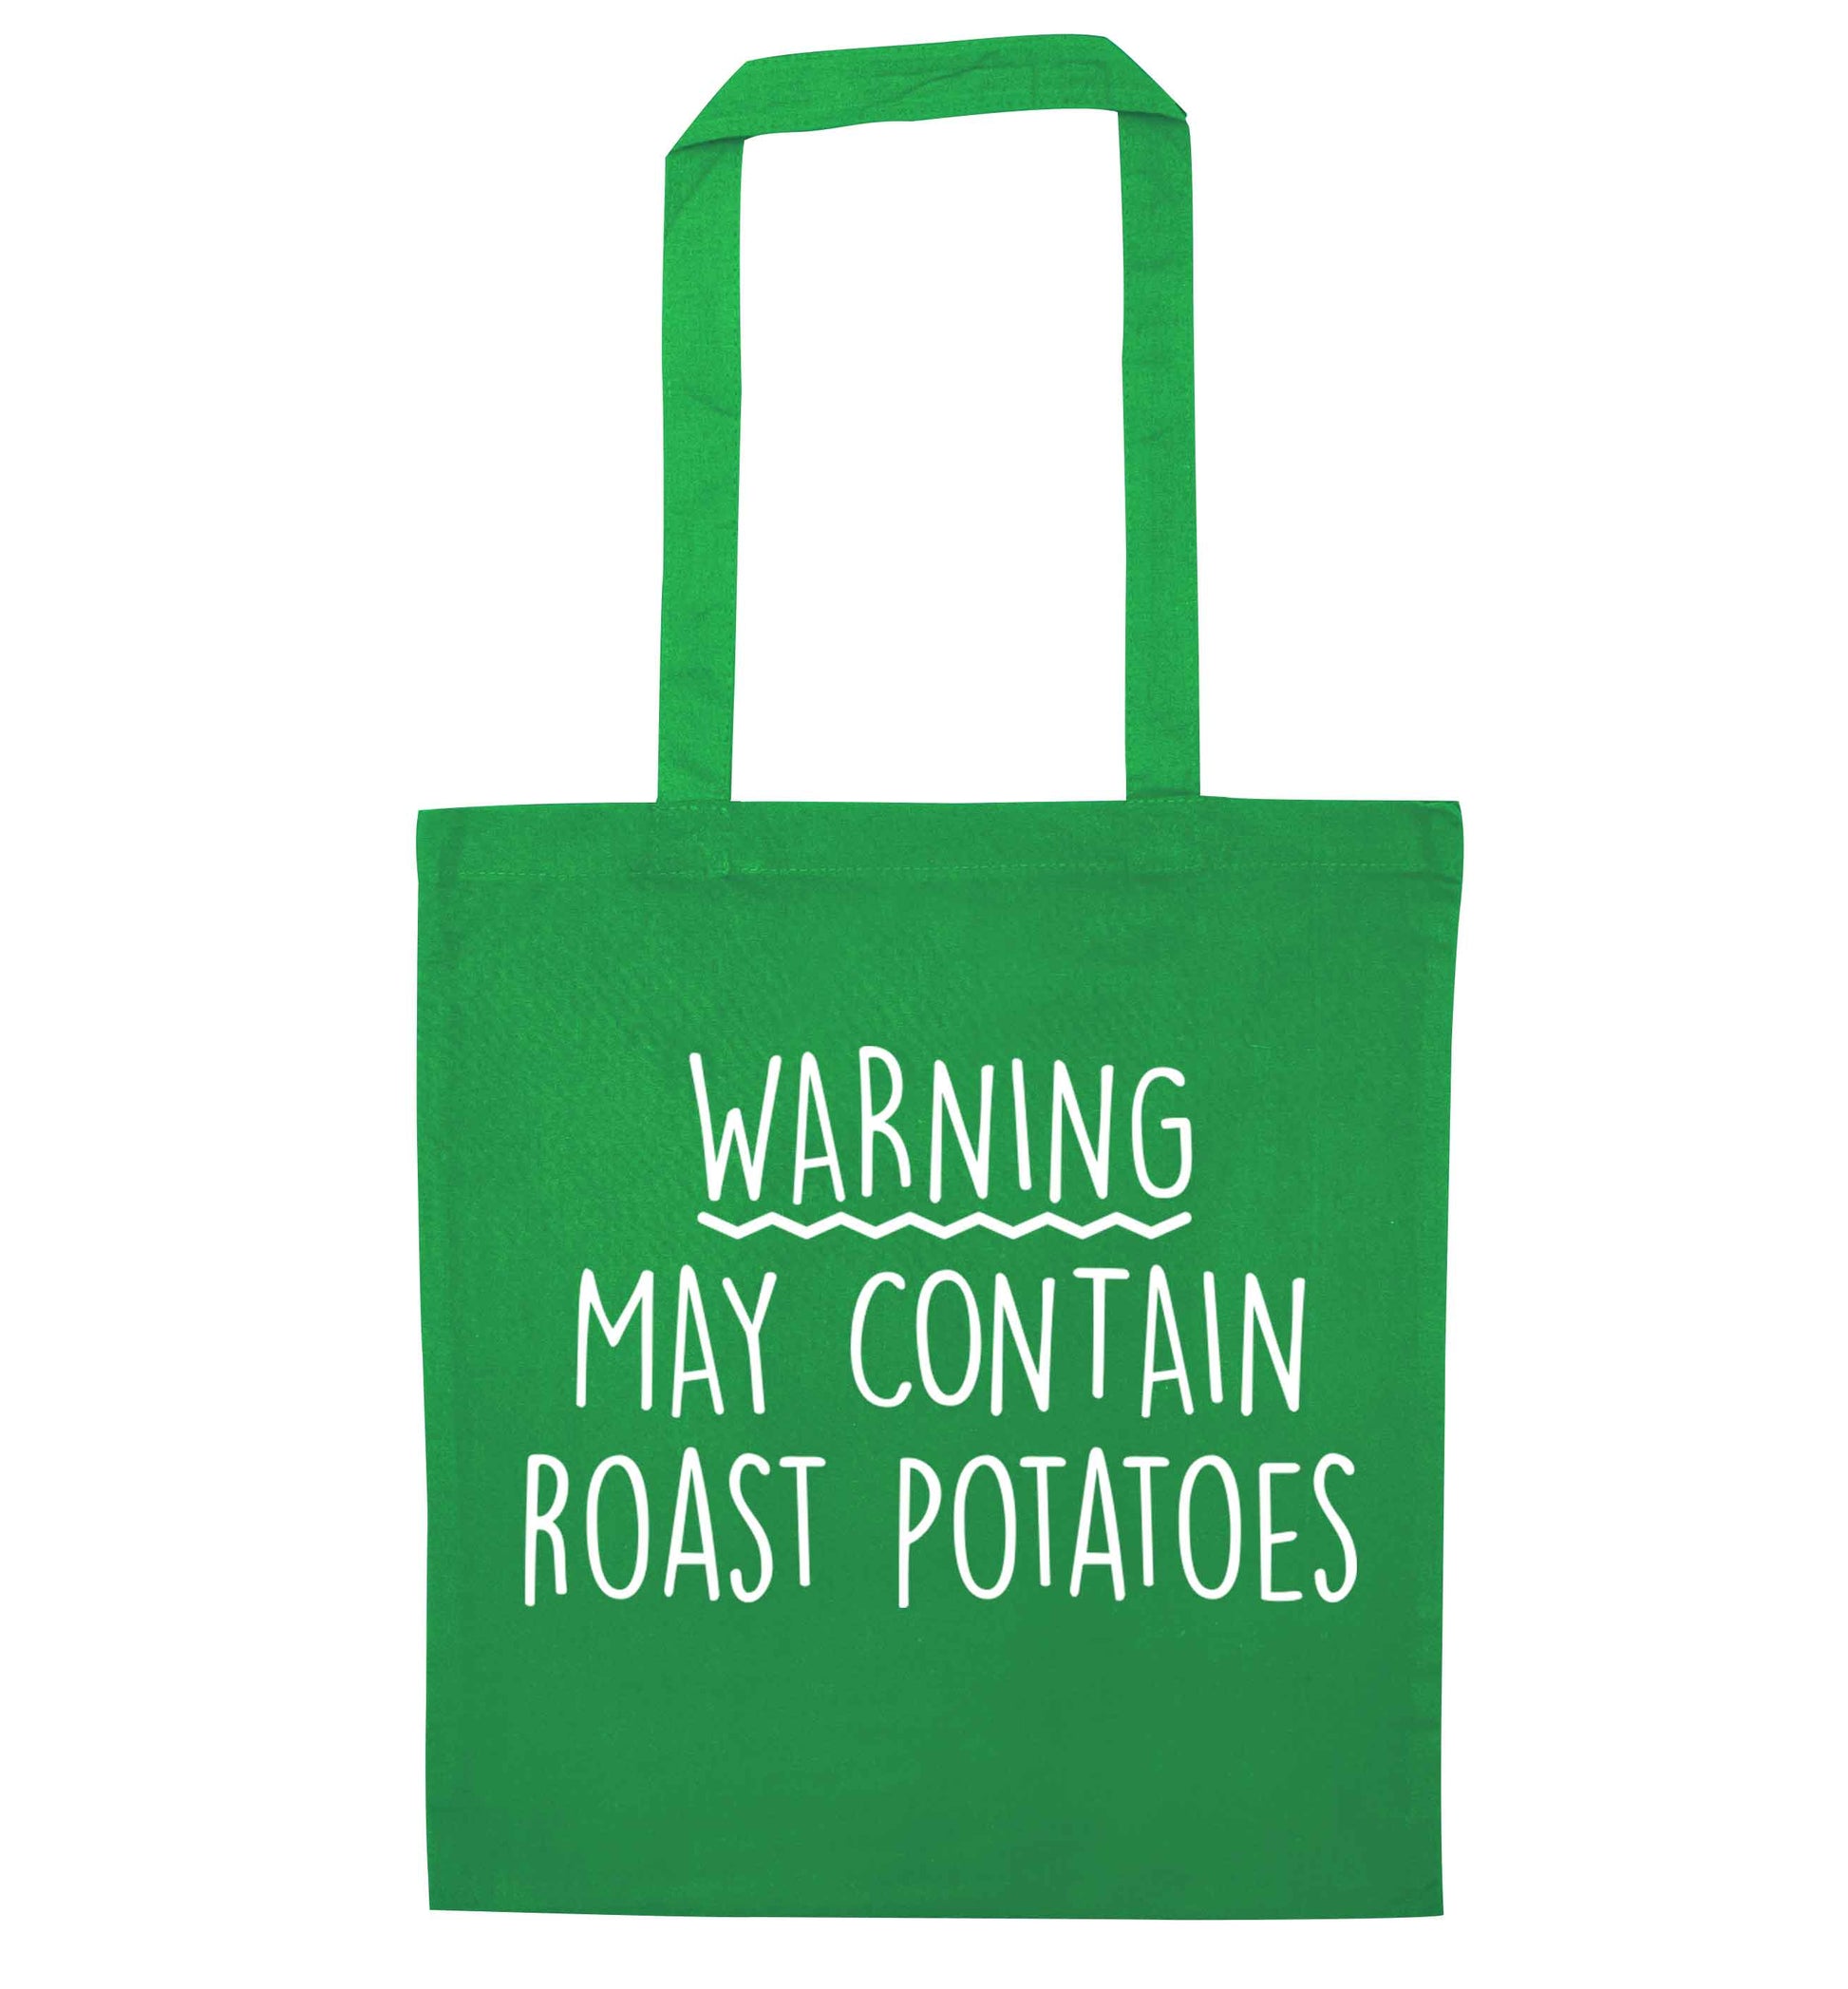 Warning may containg roast potatoes green tote bag